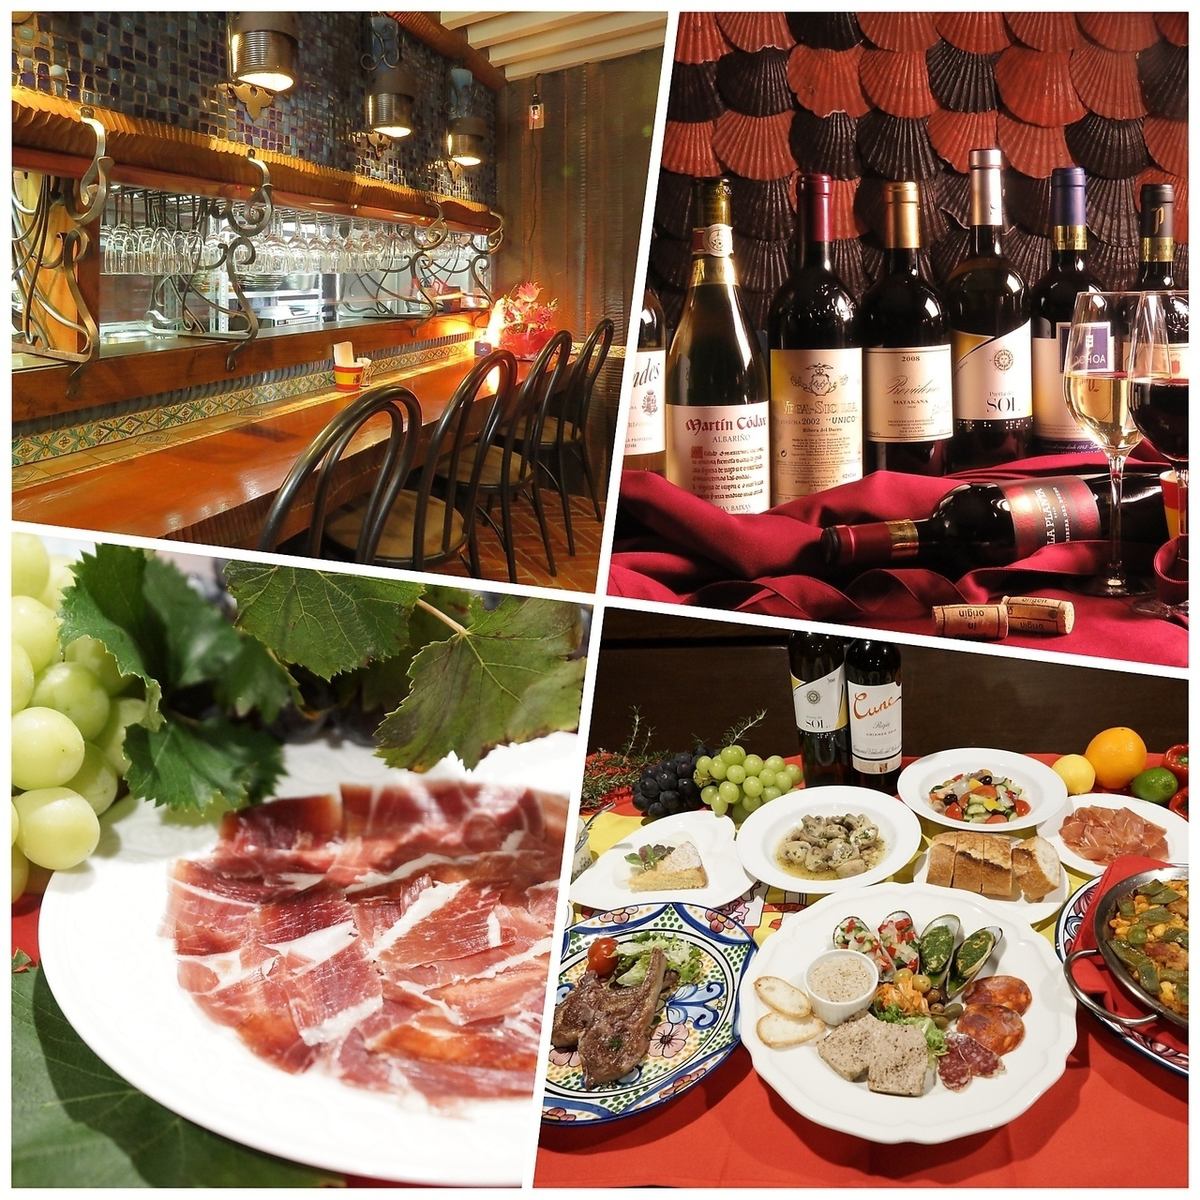 スパニッシュスタイルの店内で絶品スペイン料理とワインを楽しめるお店。